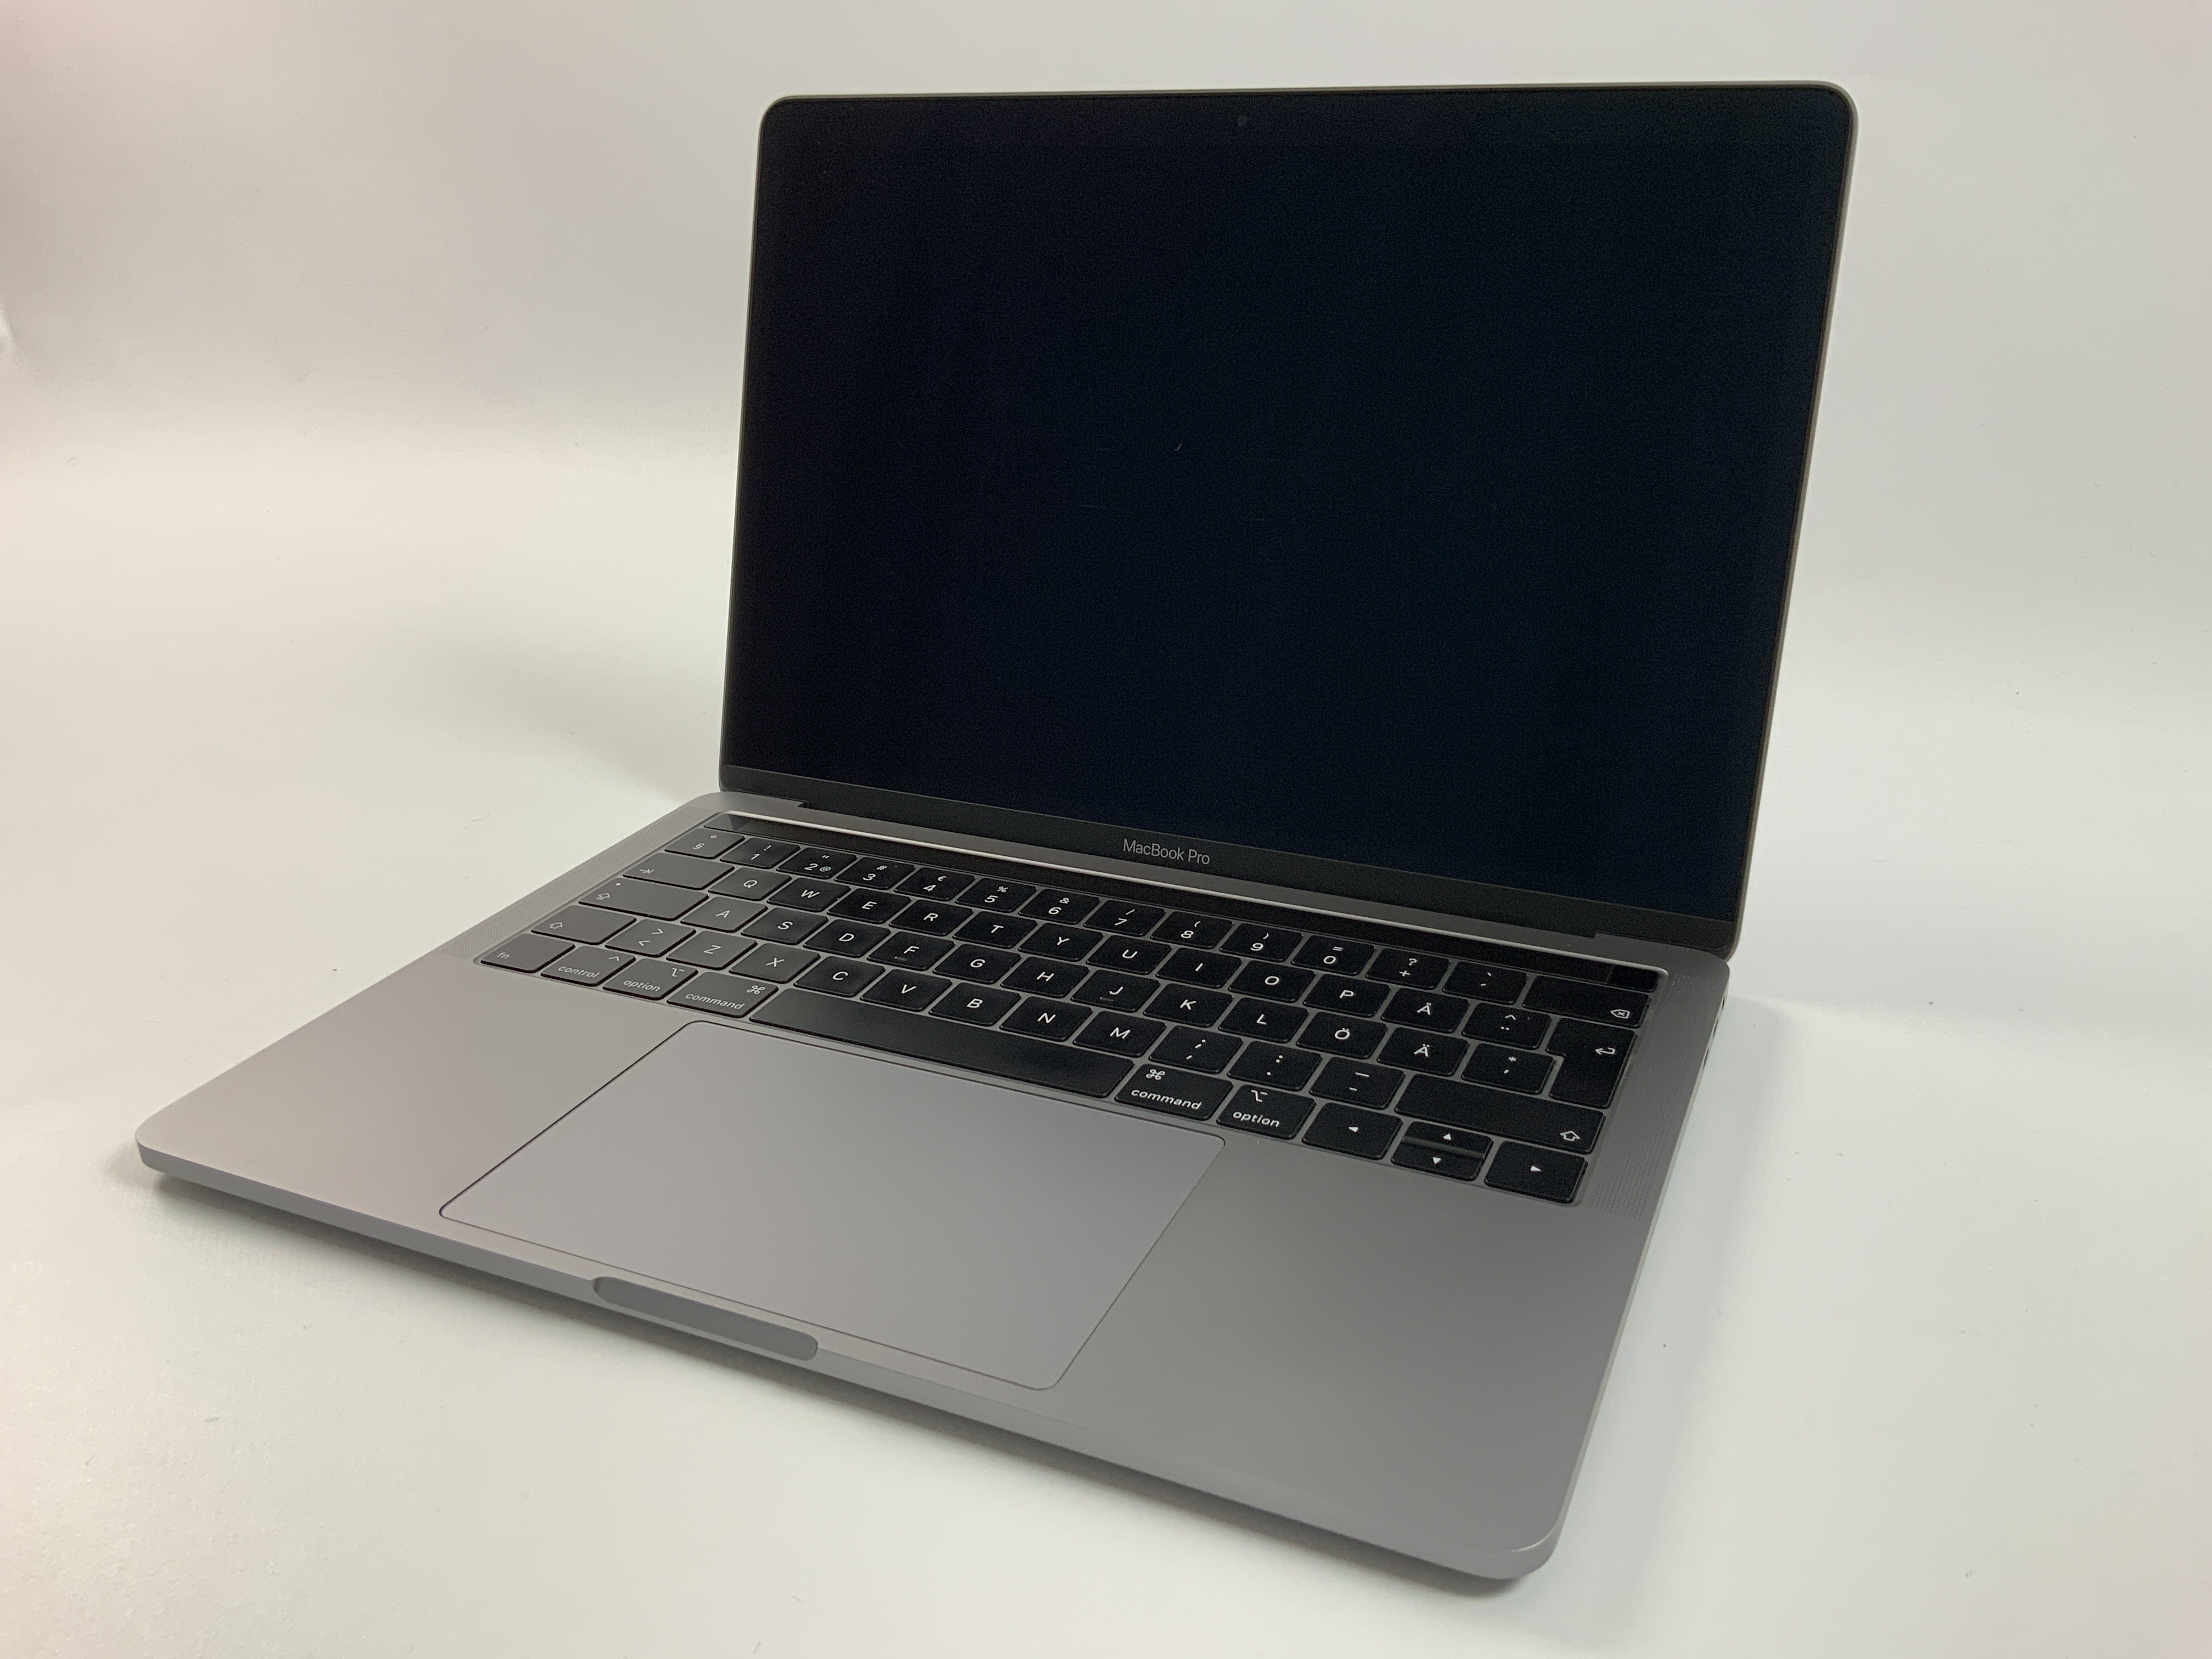 MacBook Pro 13" 4TBT Mid 2019 (Intel Quad-Core i7 2.8 GHz 16 GB RAM 256 GB SSD), Space Gray, Intel Quad-Core i7 2.8 GHz, 16 GB RAM, 256 GB SSD, bild 1